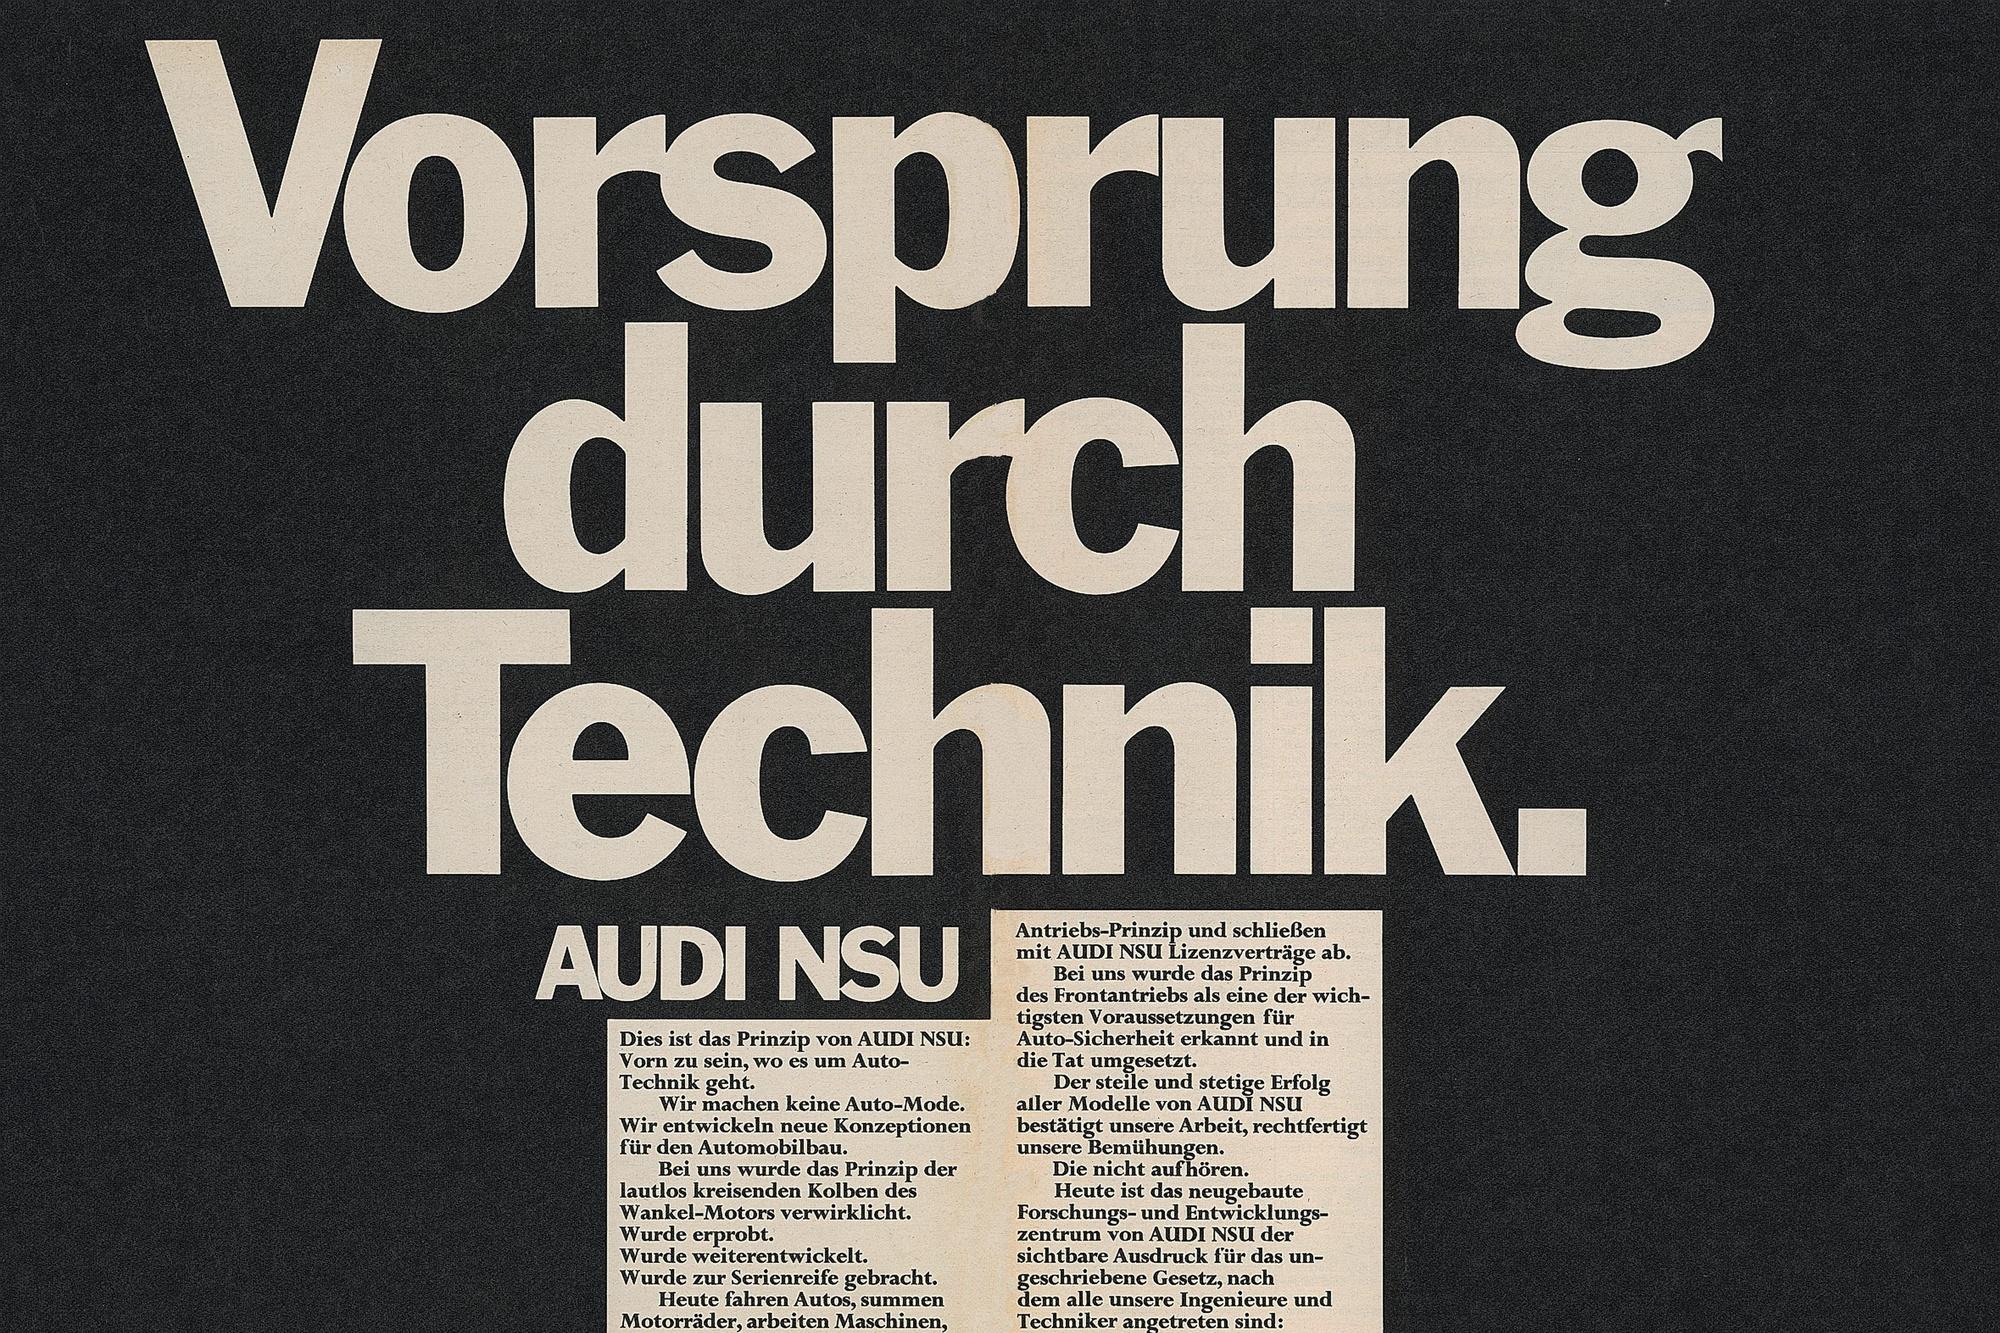 De eerste advertentie met de baseline Vorsprung durch Technik verscheen in 1971.